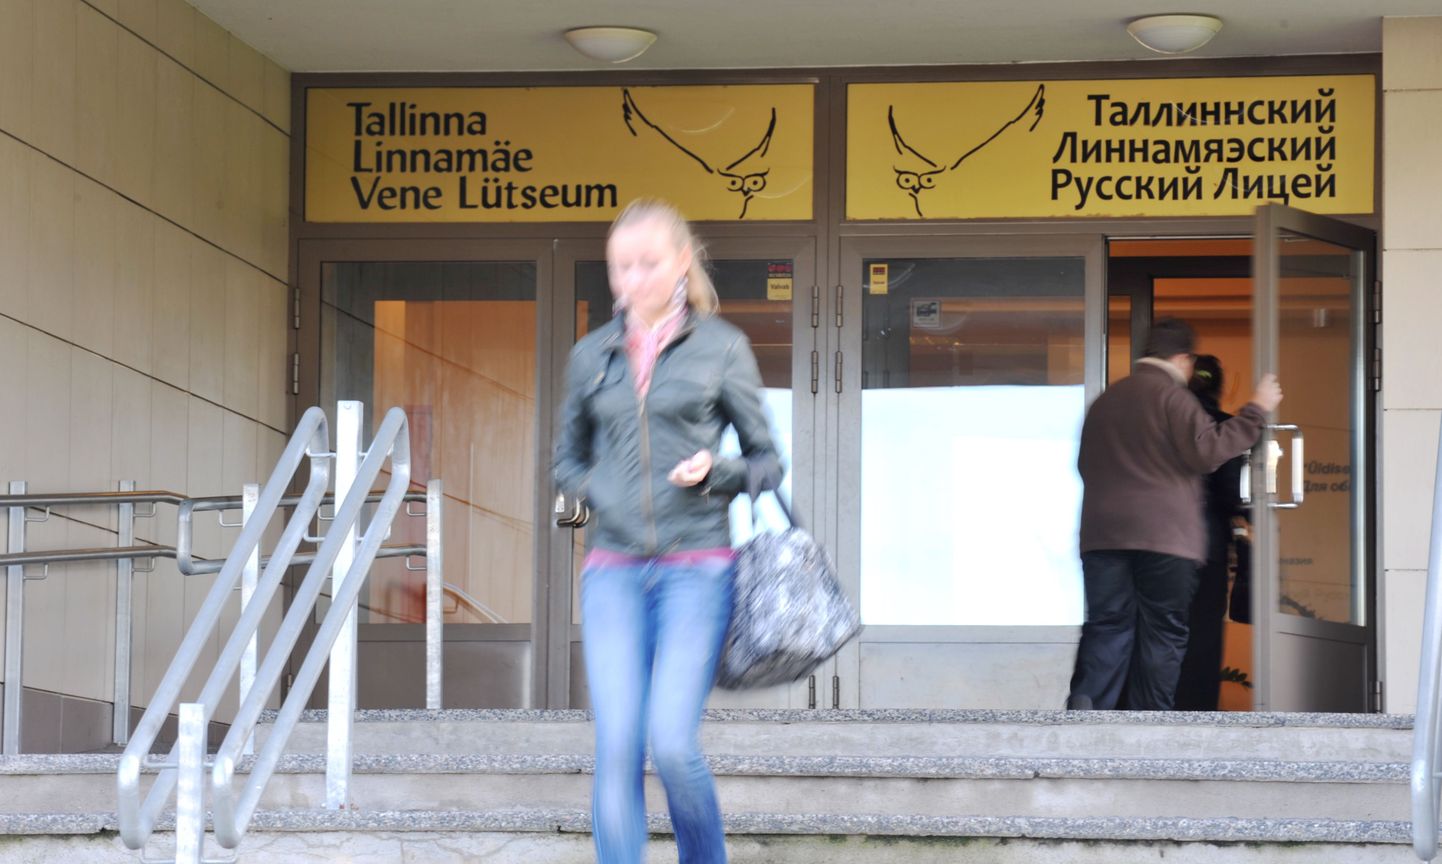 TLNPM11:KOOL:TALLINN, EESTI, 27SEP11.
Tallinna Linnamäe Vene Lütseum.
ps/Foto PRIIT SIMSON/POSTIMEES